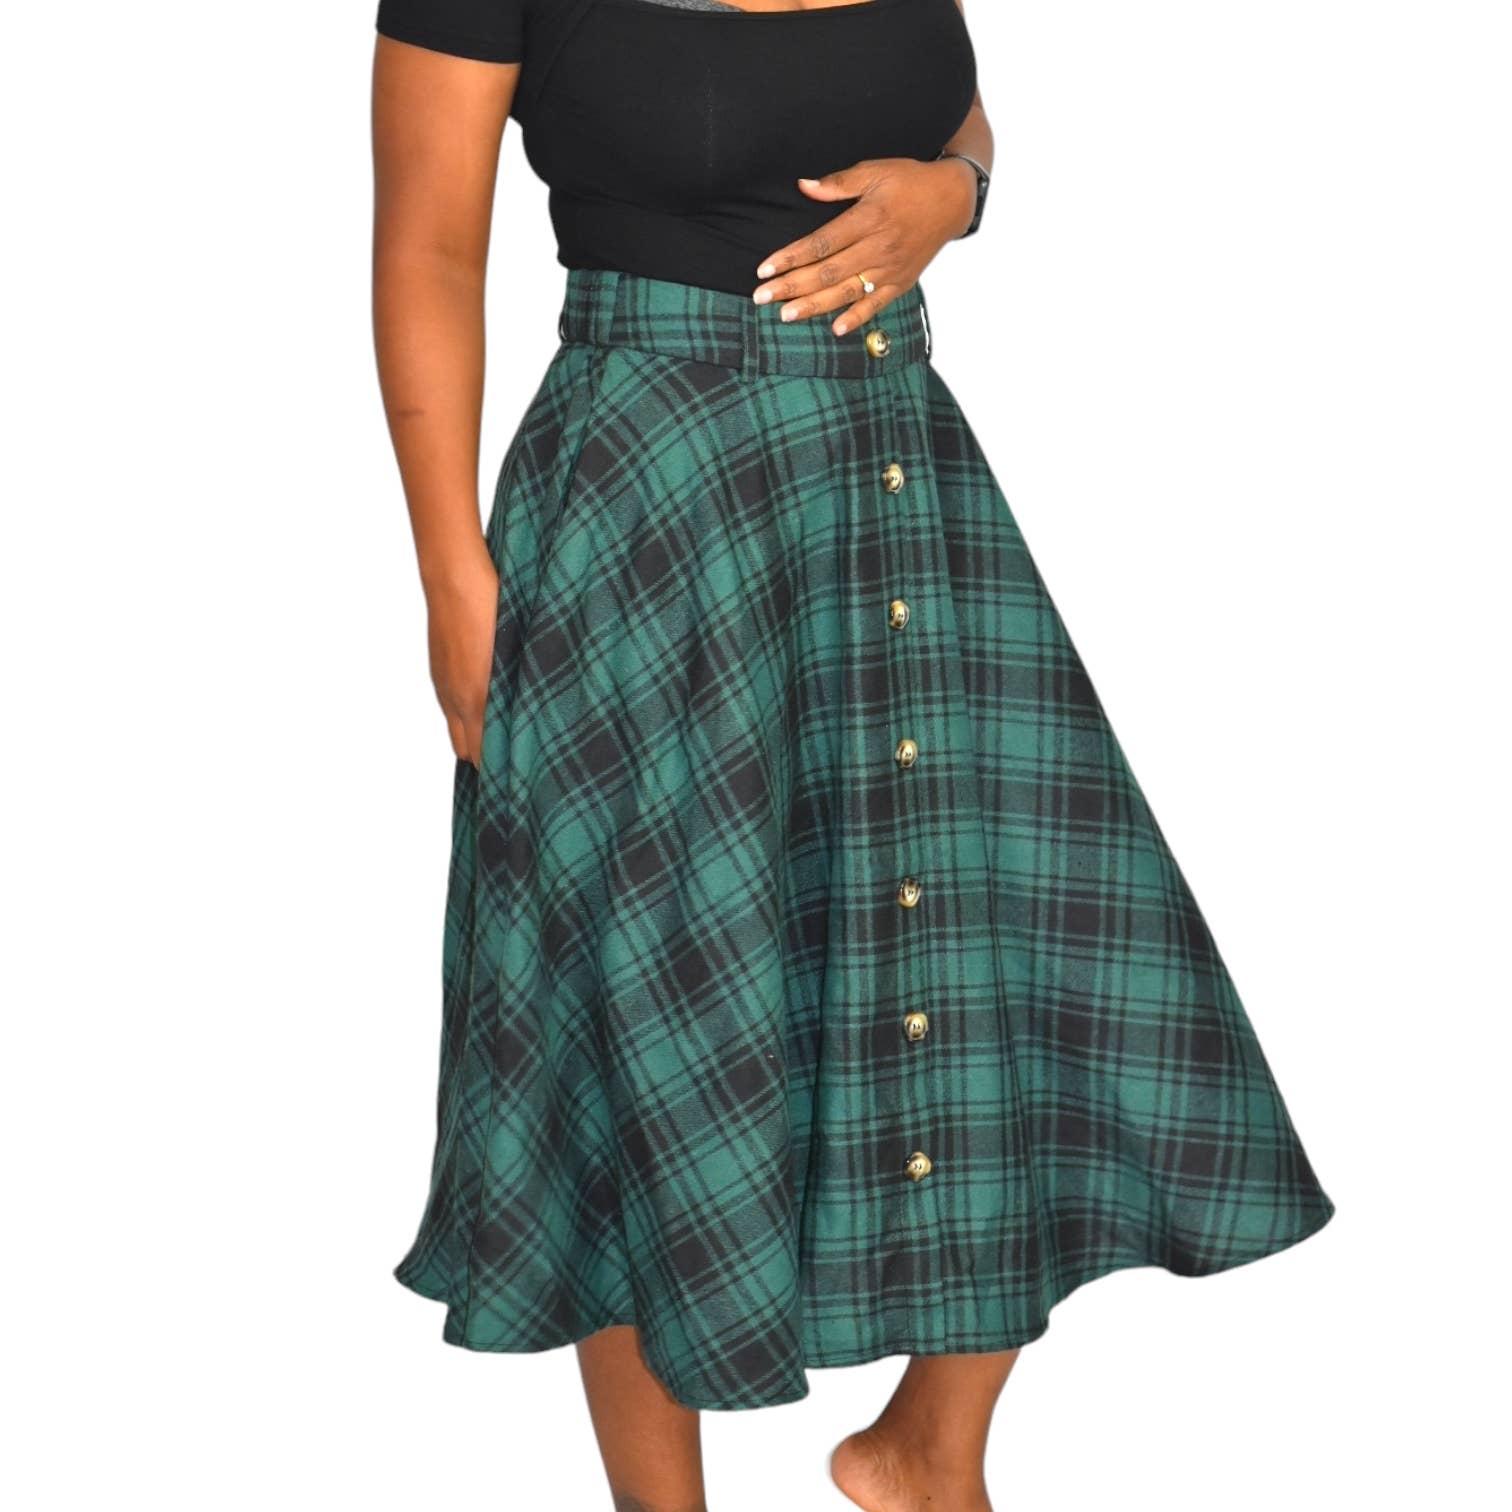 Belle Poque Plaid Skirt Green Midi Tartan Flared Flannel Full A Line Skater Retro Size Medium